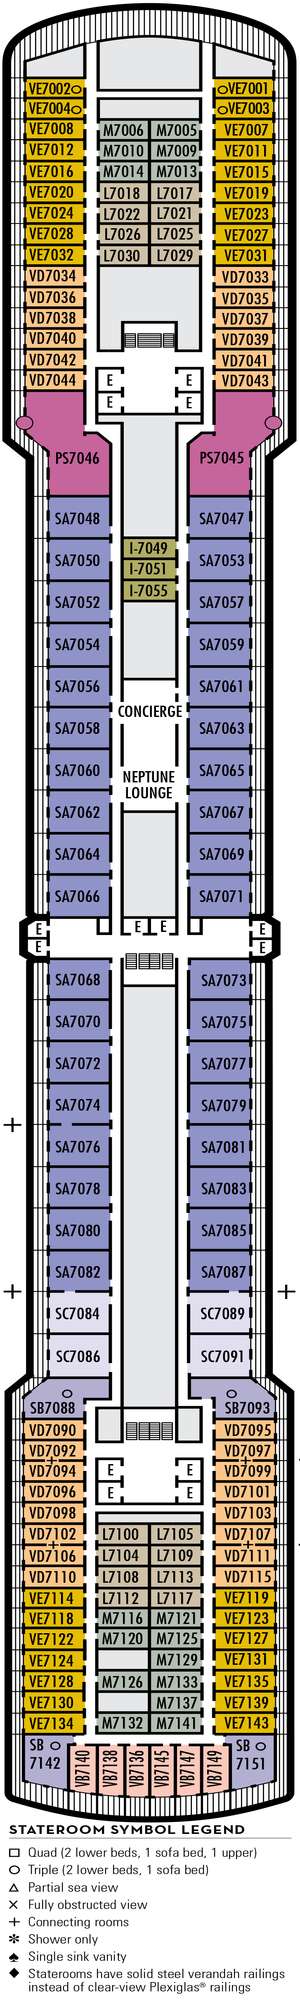 Deck plan for Zuiderdam